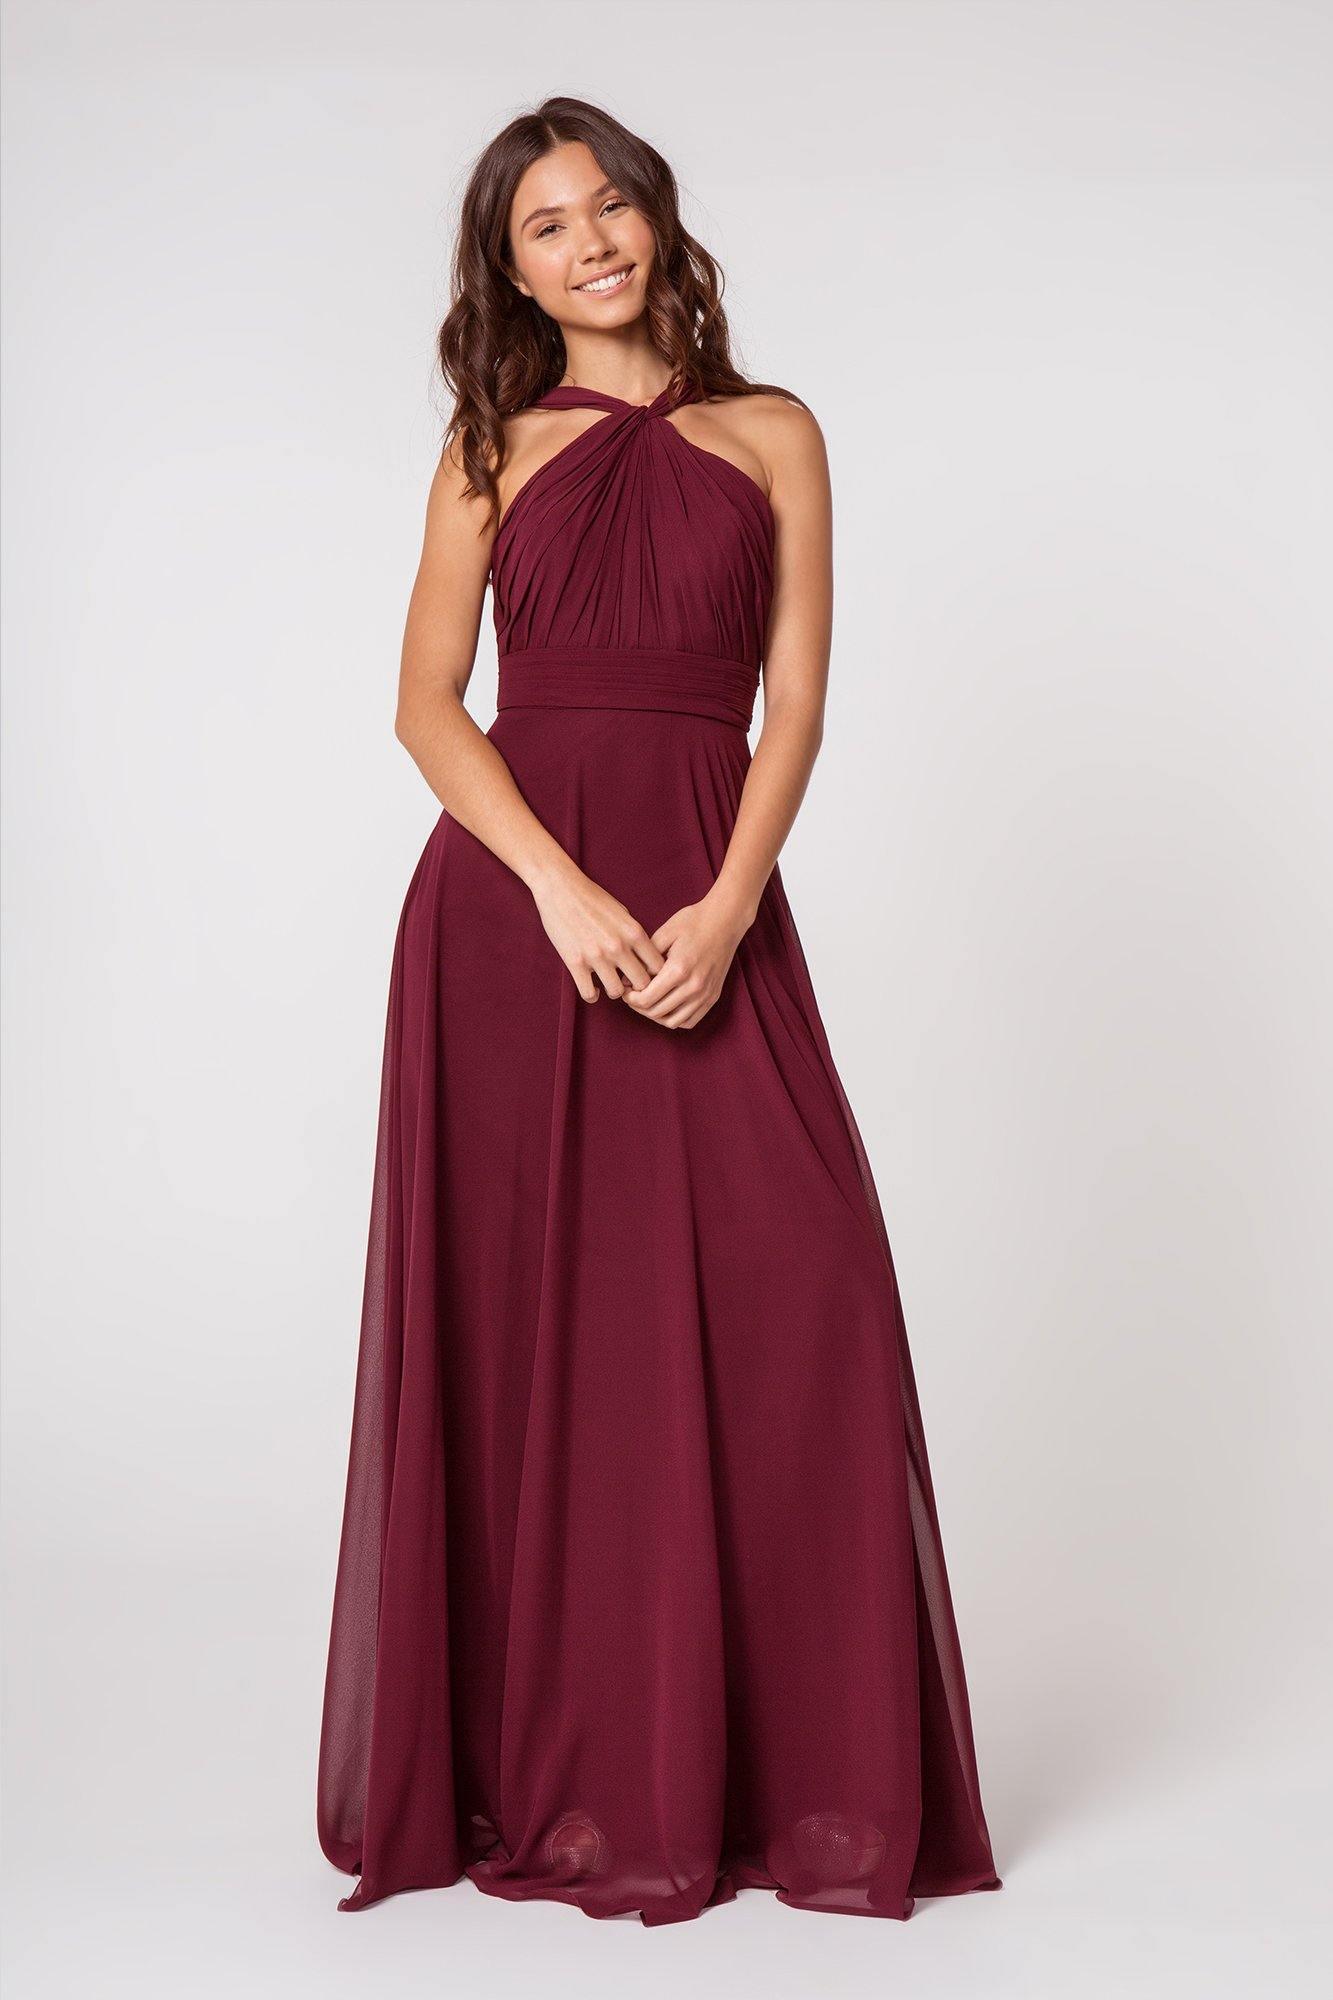 Halter Long Formal Dress Sale - The Dress Outlet